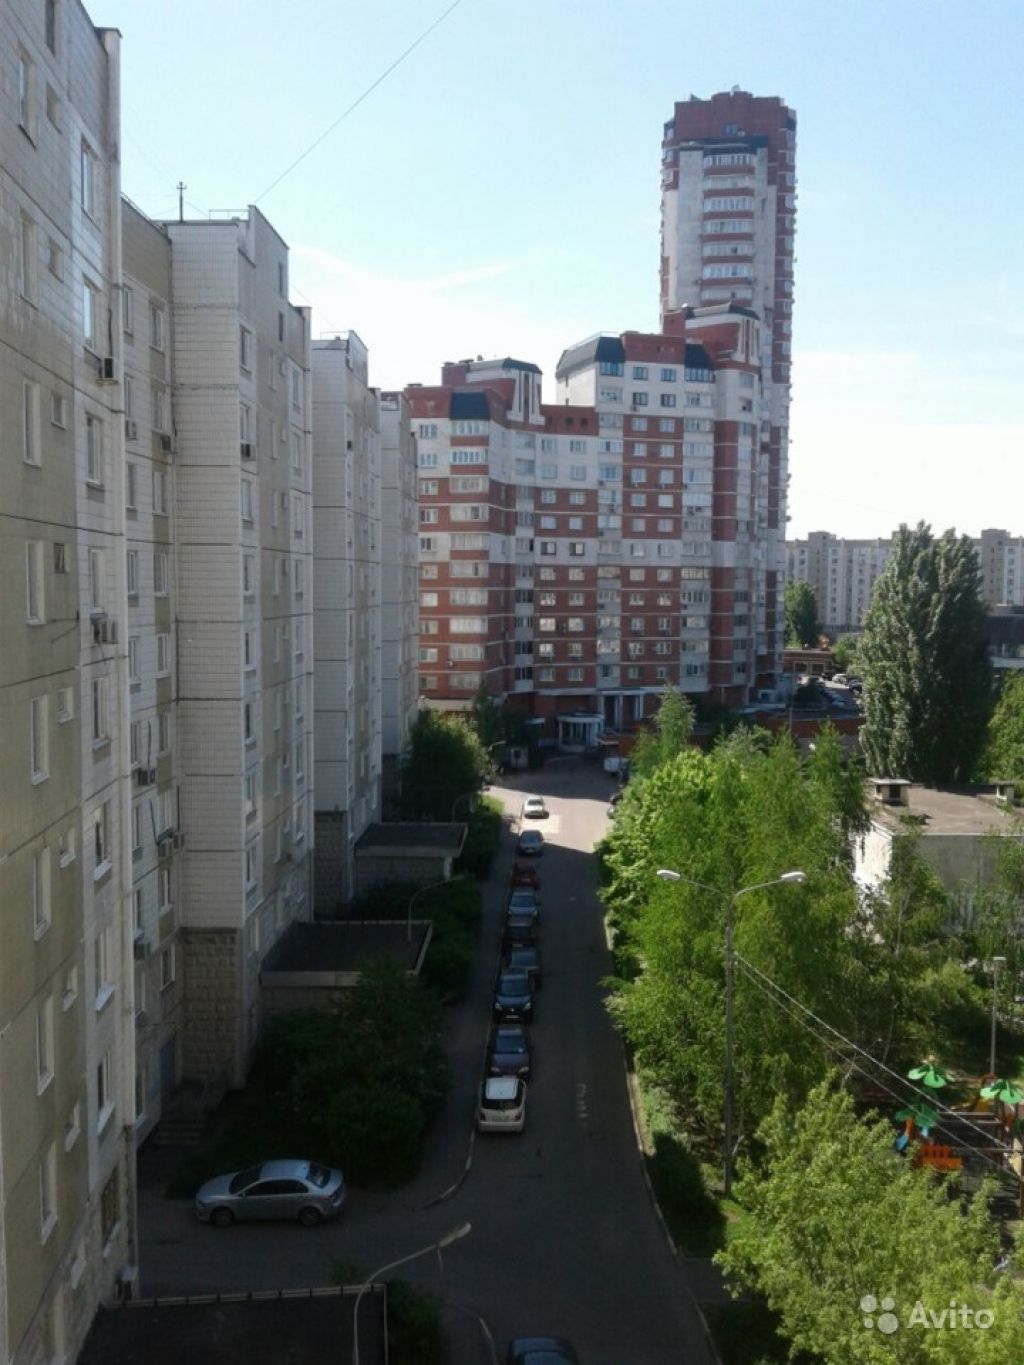 Сдам квартиру 1-к квартира 38 м² на 7 этаже 10-этажного панельного дома в Москве. Фото 1